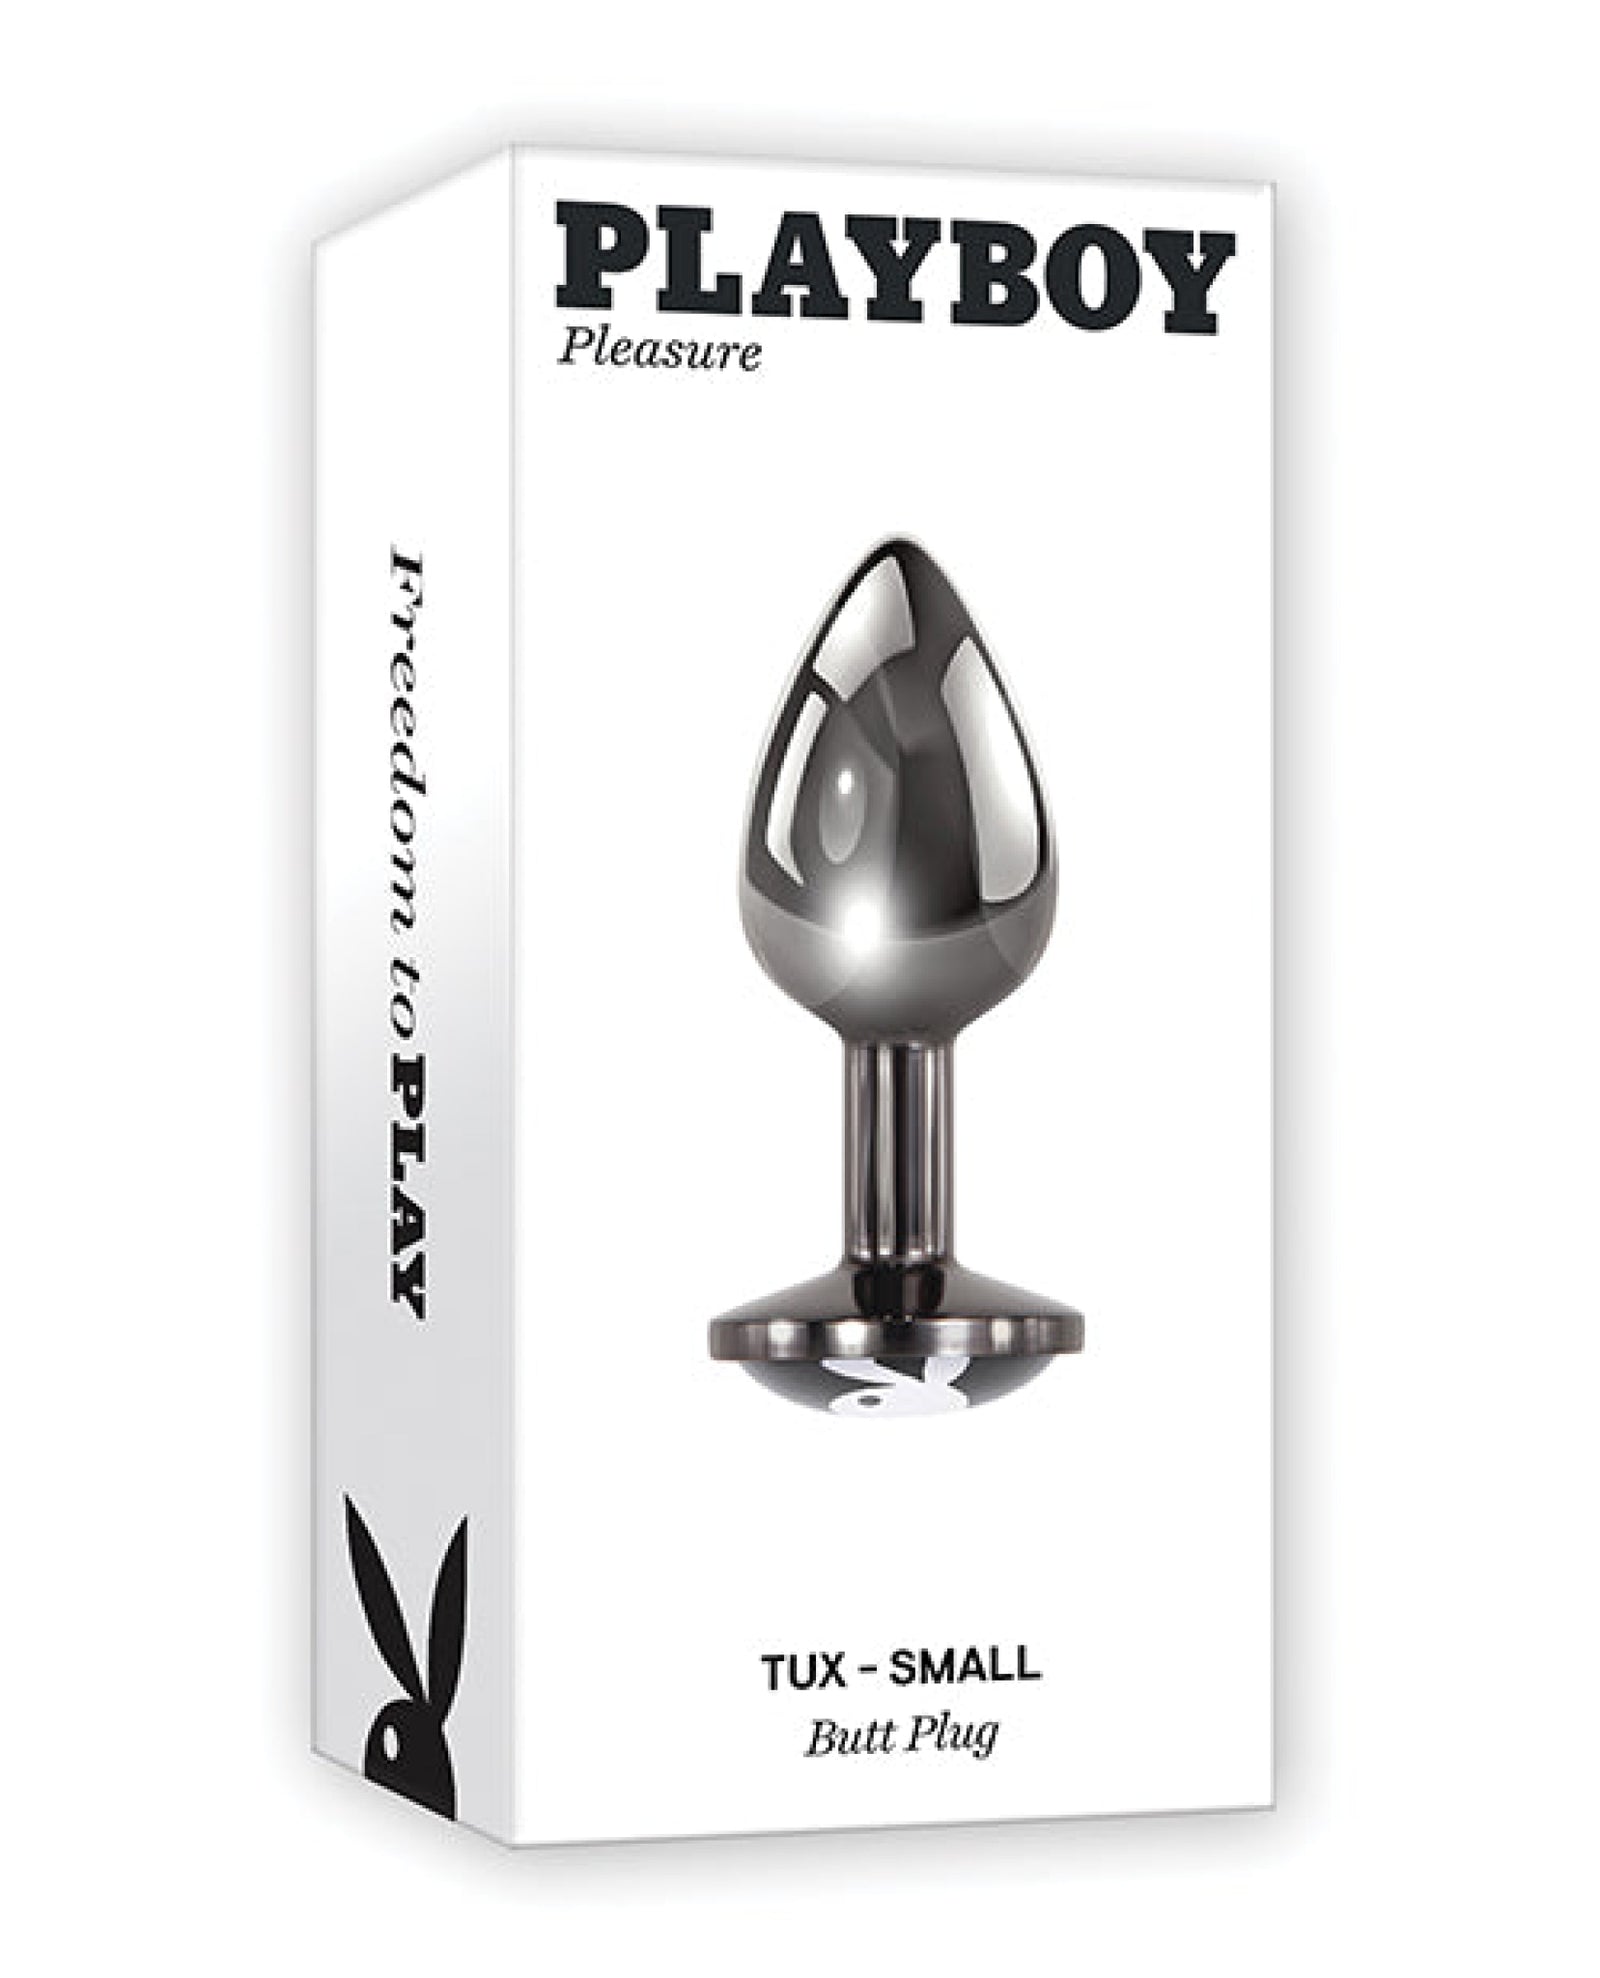 Playboy Pleasure Tux Butt Plug Playboy